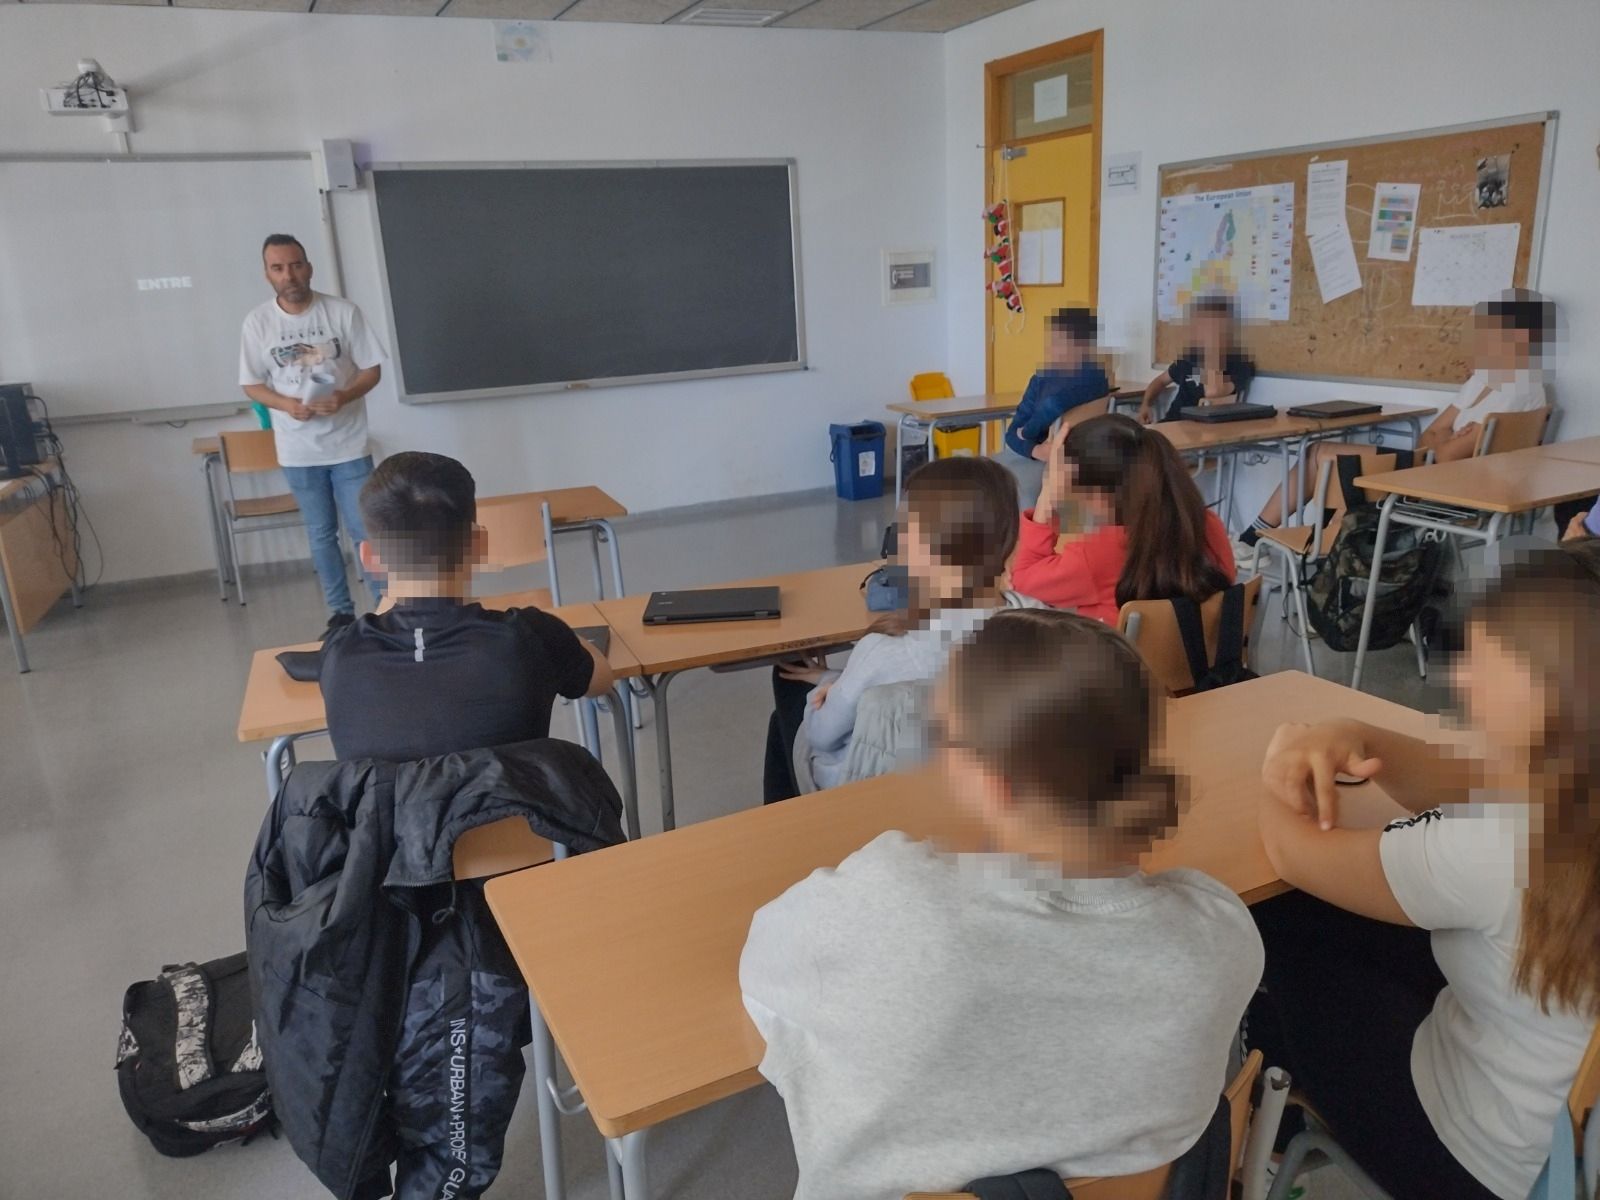 Alrededor de 150 alumnos reciben claves para combatir el acoso escolar gracias al departamento de Policía Tutor del Ayuntamiento de Santa Eulària des Riu